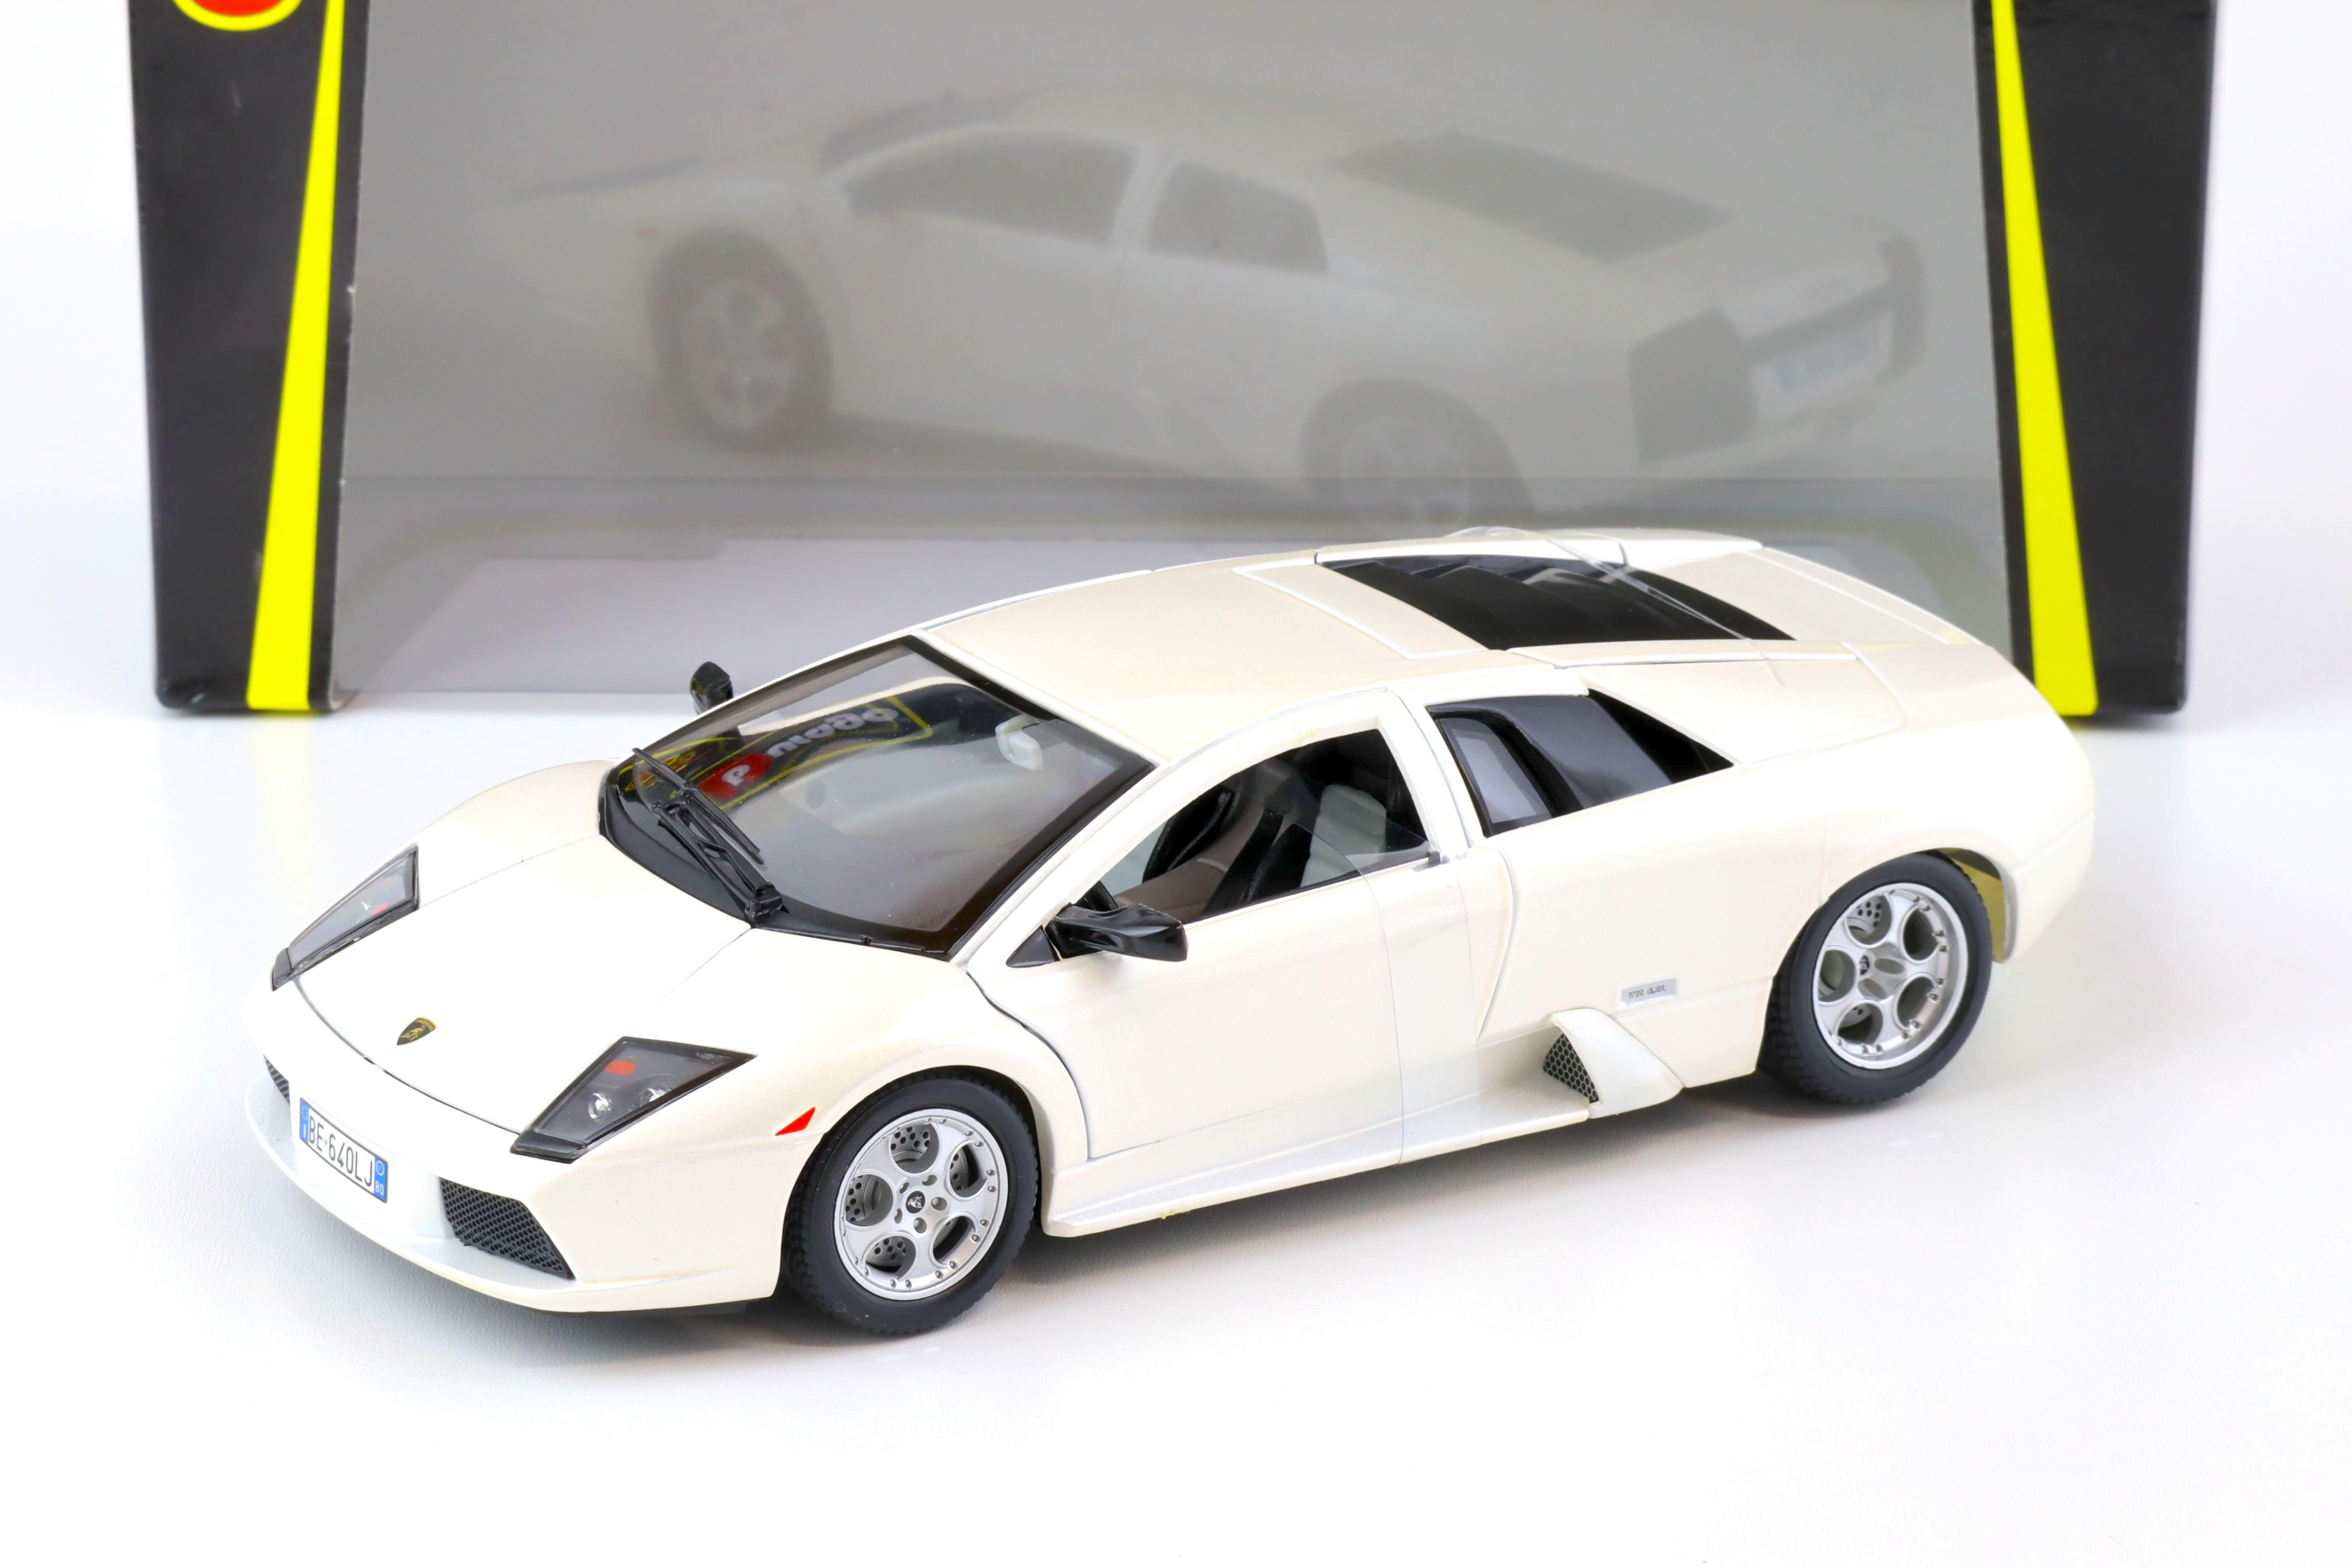 1:18 Bburago Lamborghini Murcielago pearl white metallic